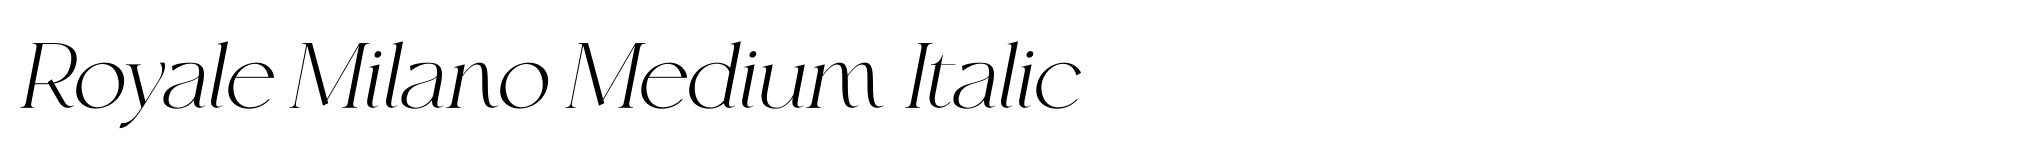 Royale Milano Medium Italic image